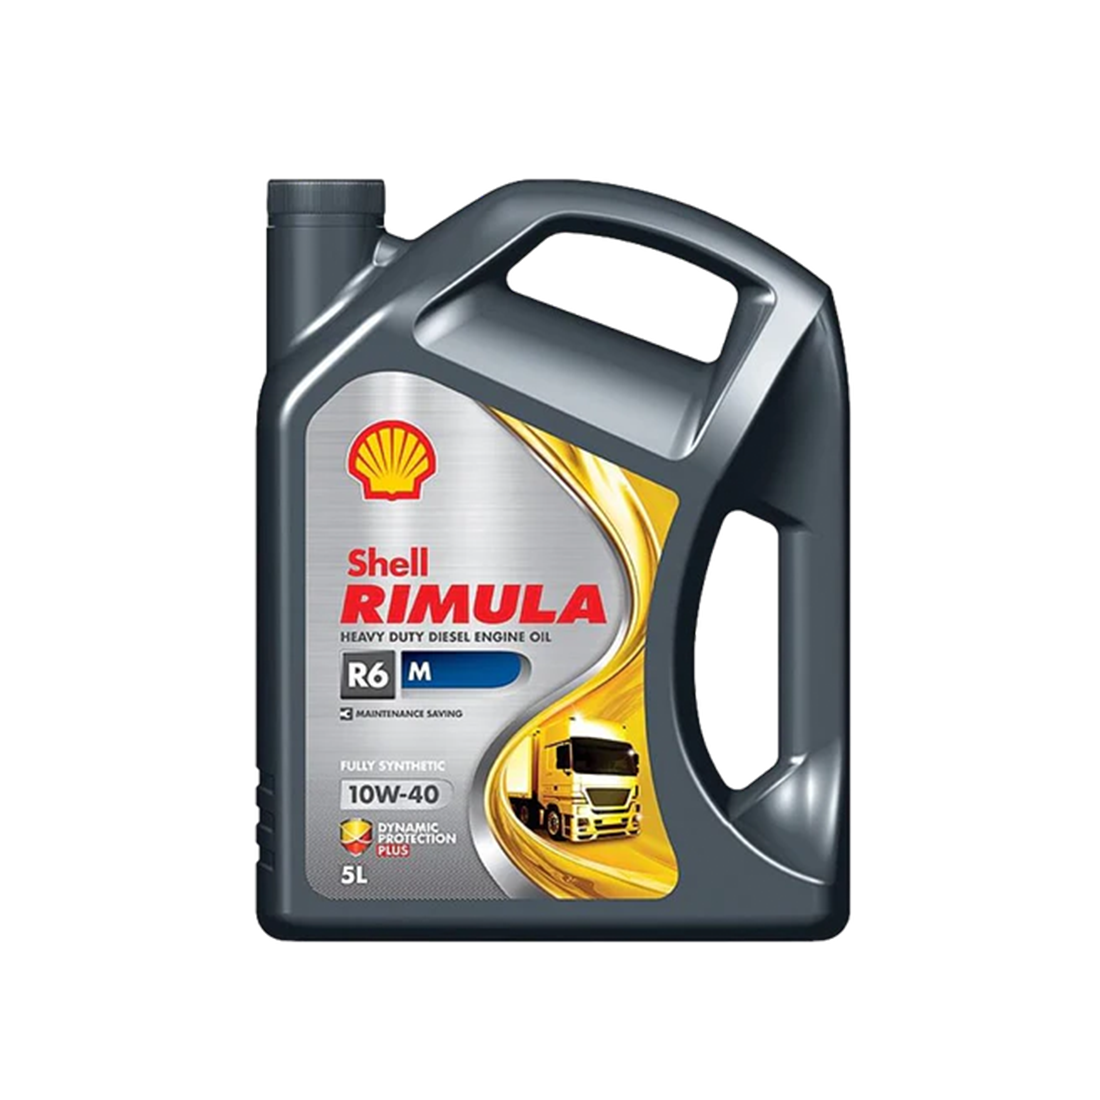 Syntetisk Dieselmotorolja Shell Rimula R6 M 10W-40, 5L